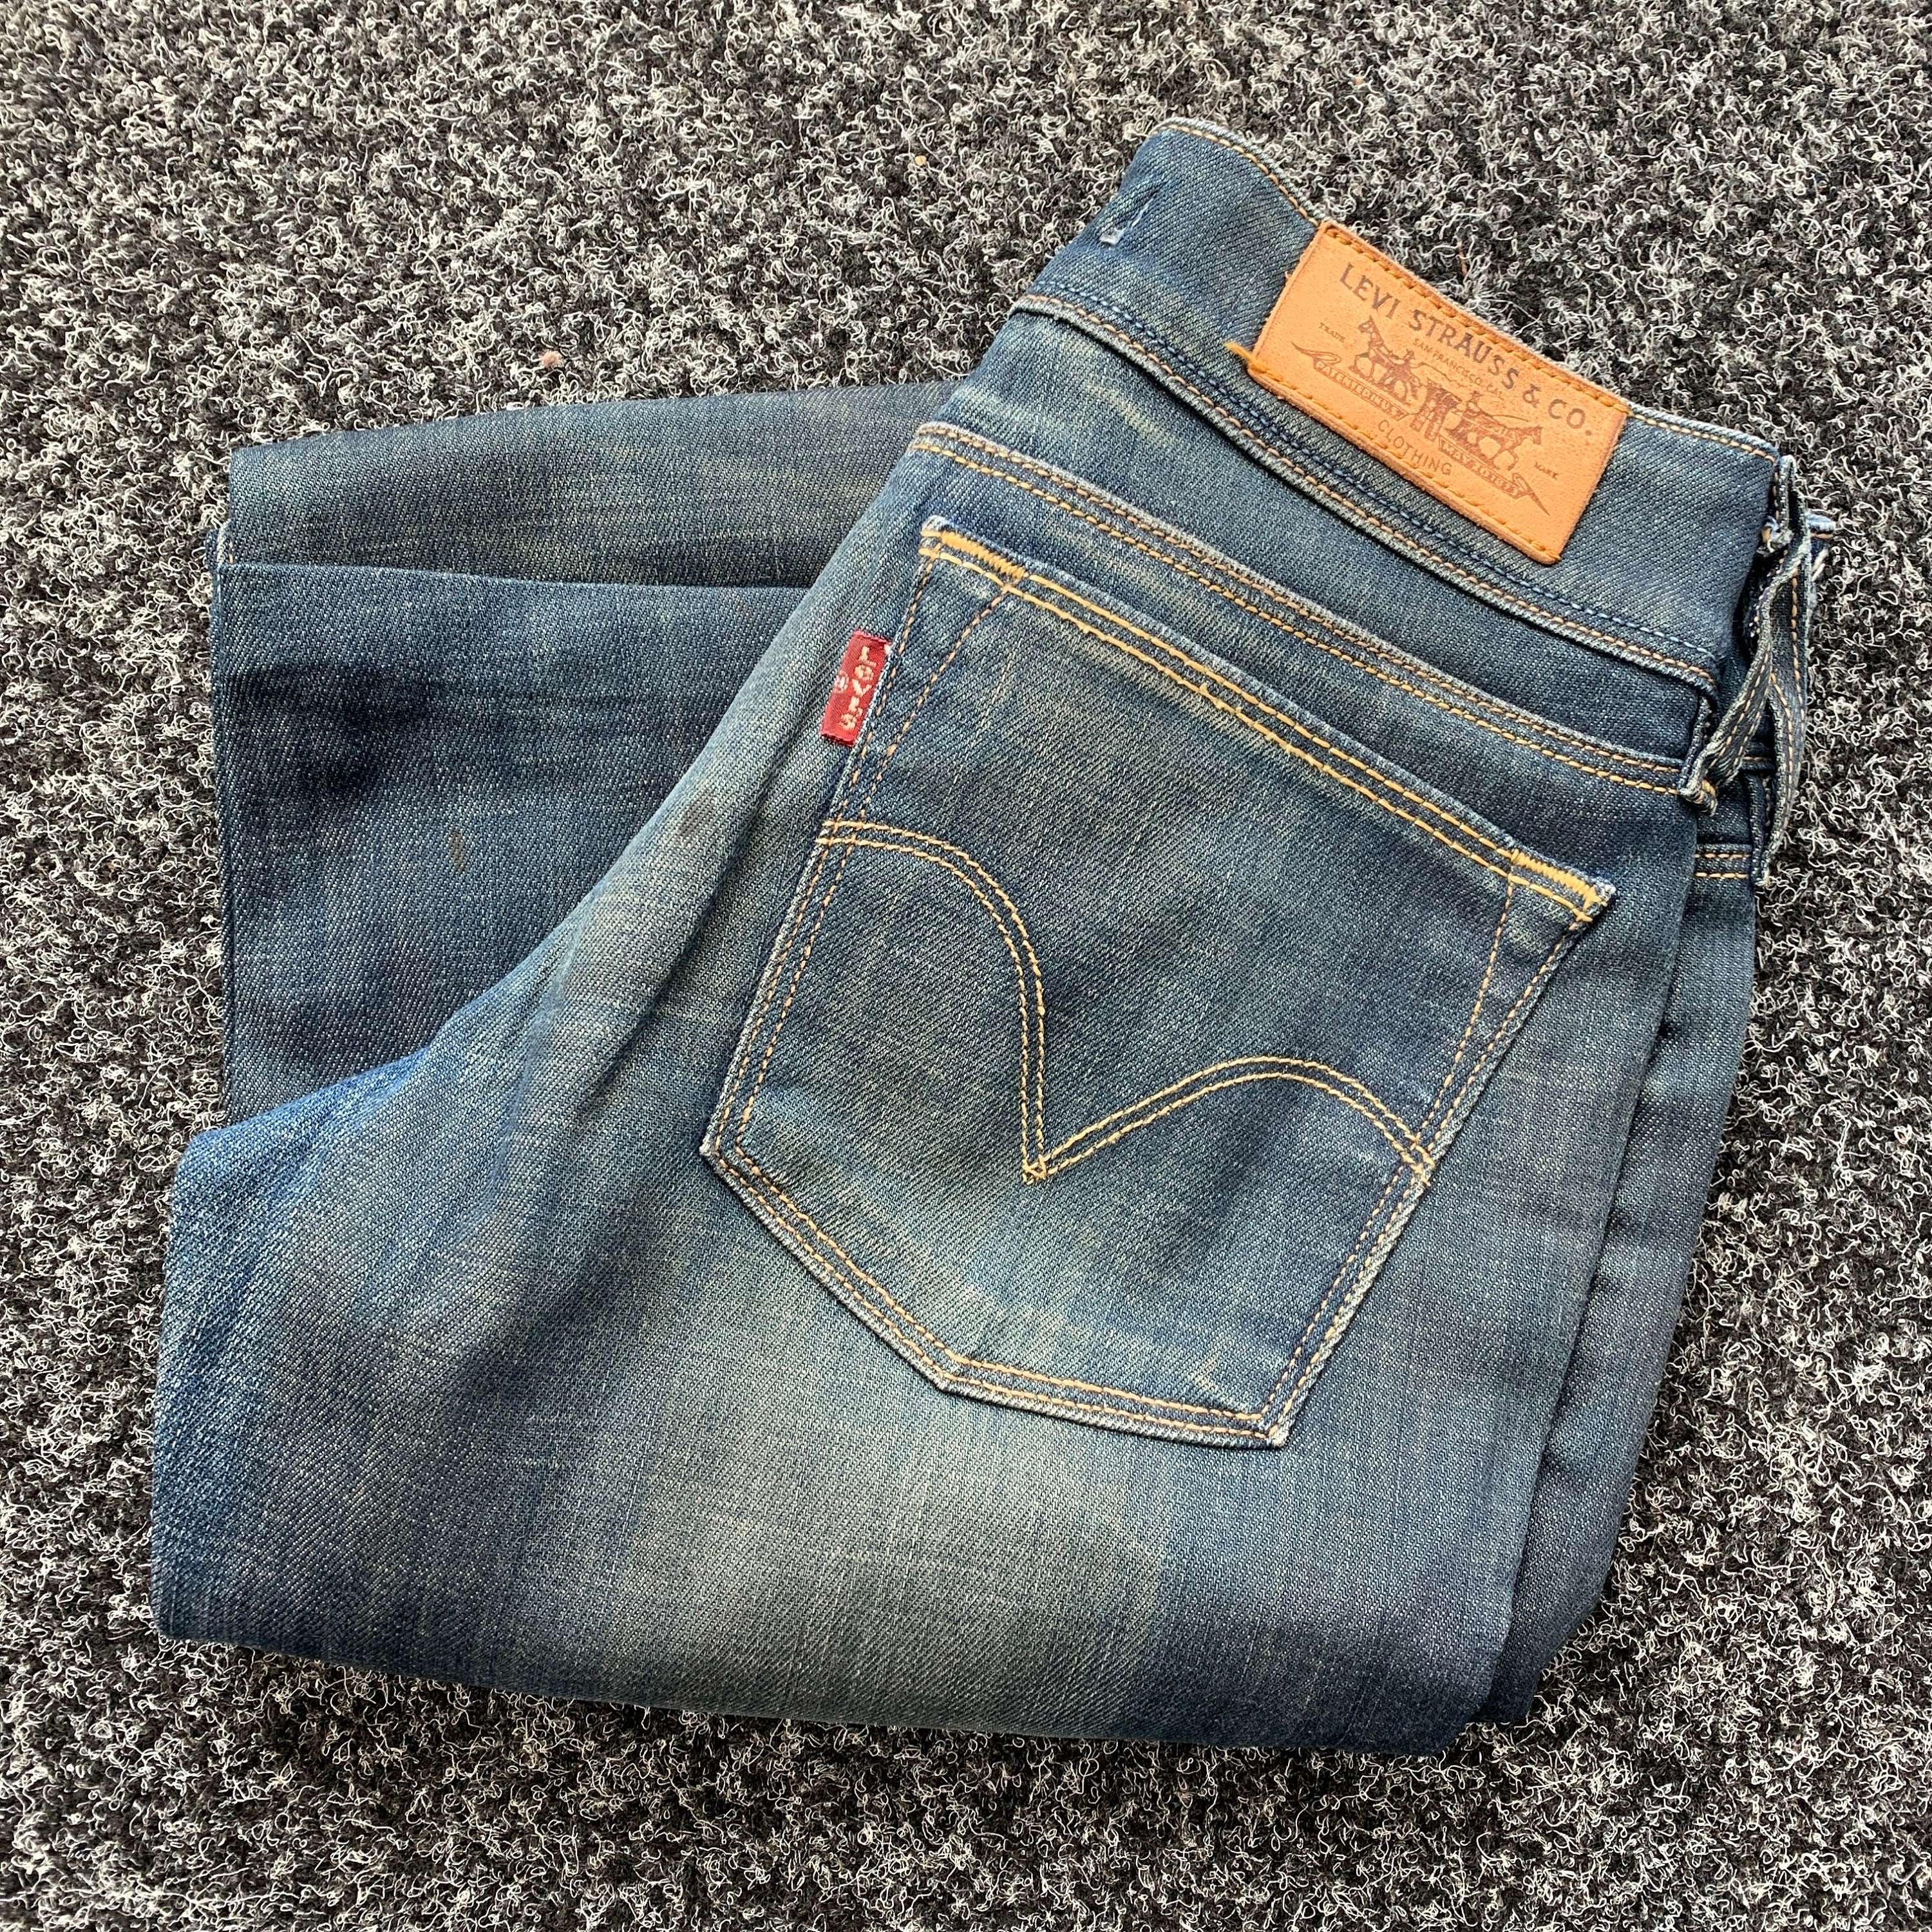 Vintage Denim Jeans. Model 571 Slim Fit Denim - Etsy